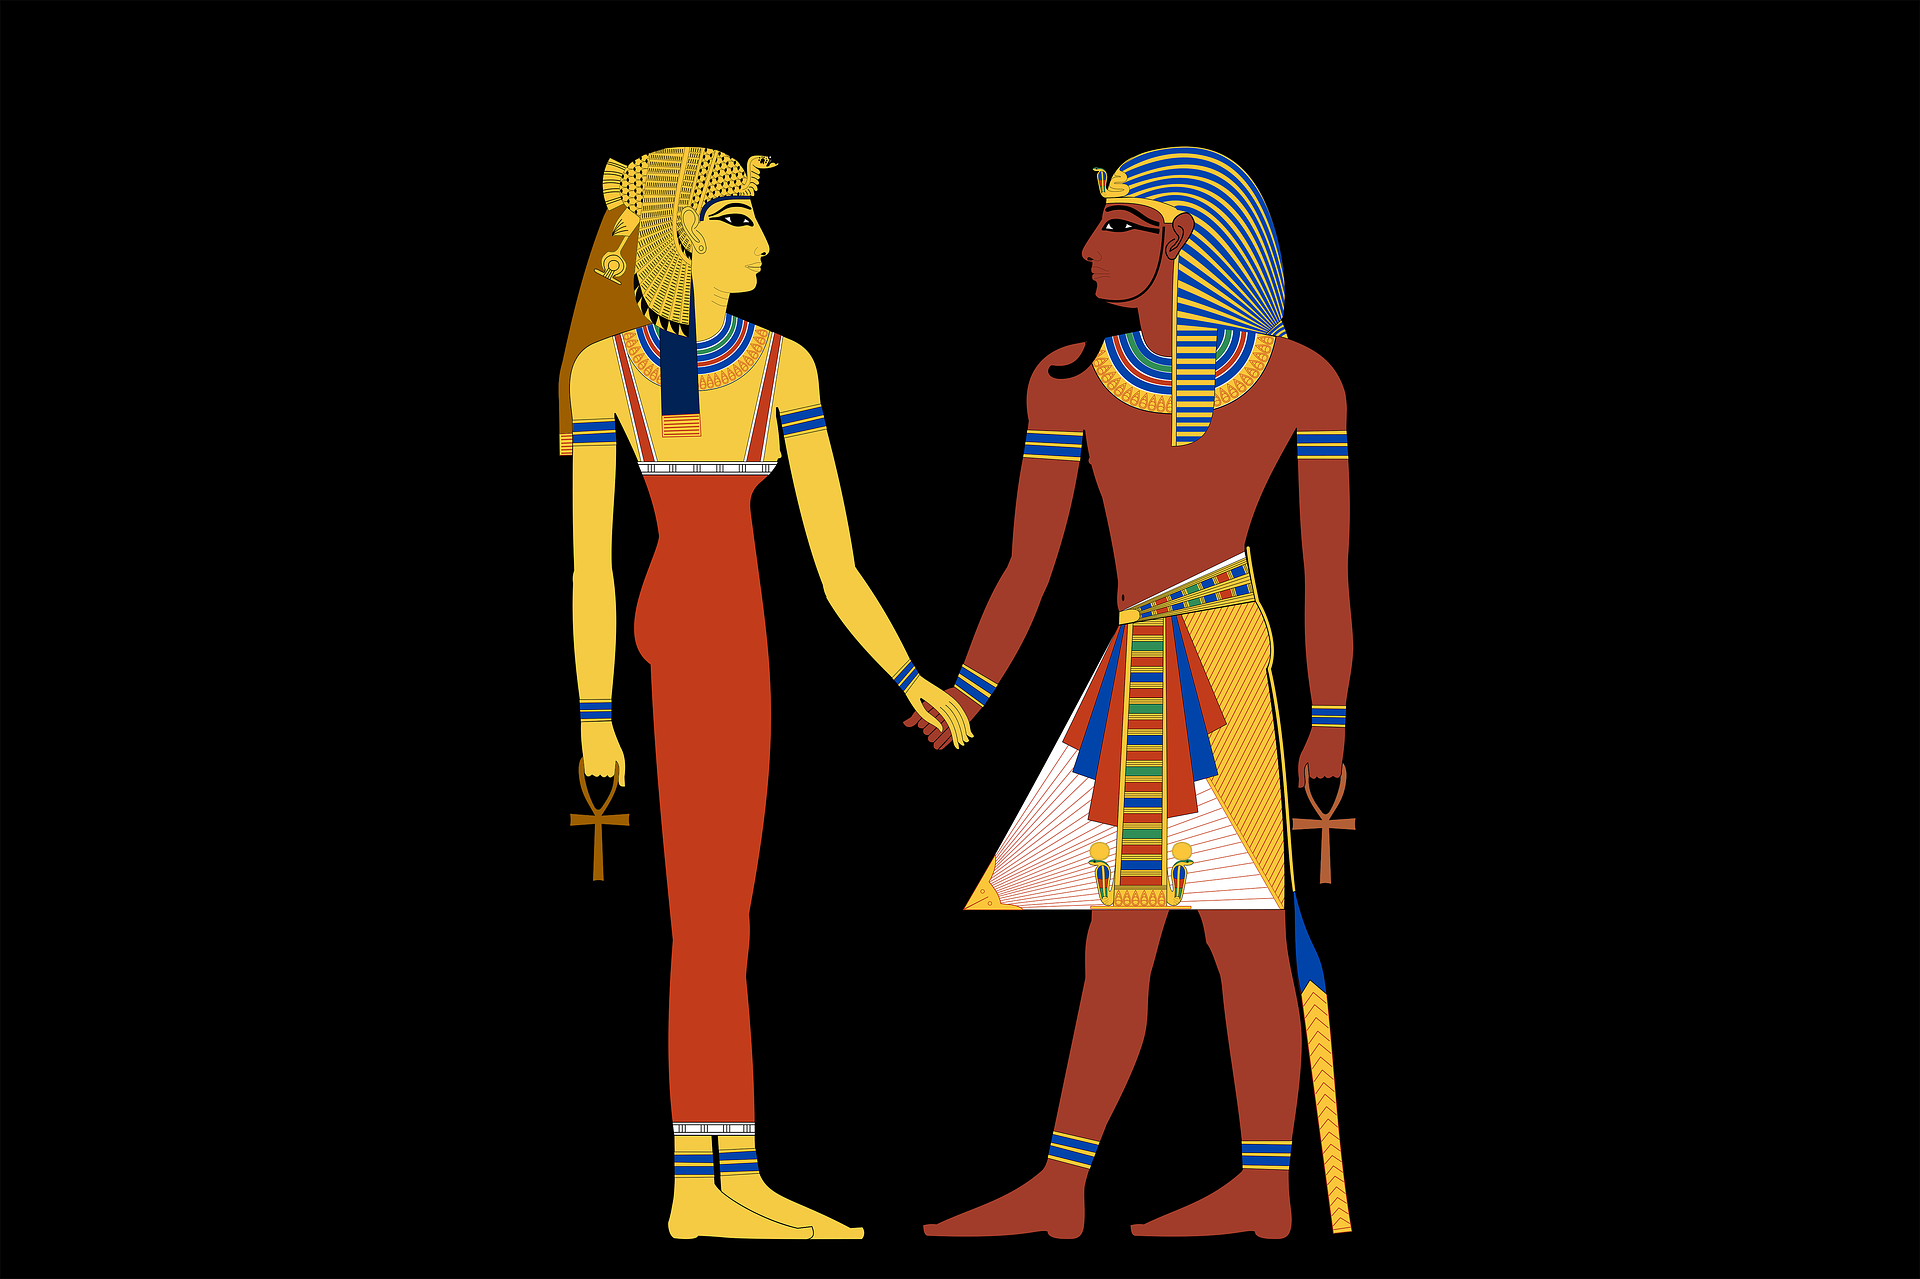 Какие украшения носили фараоны в Древнем Египте?